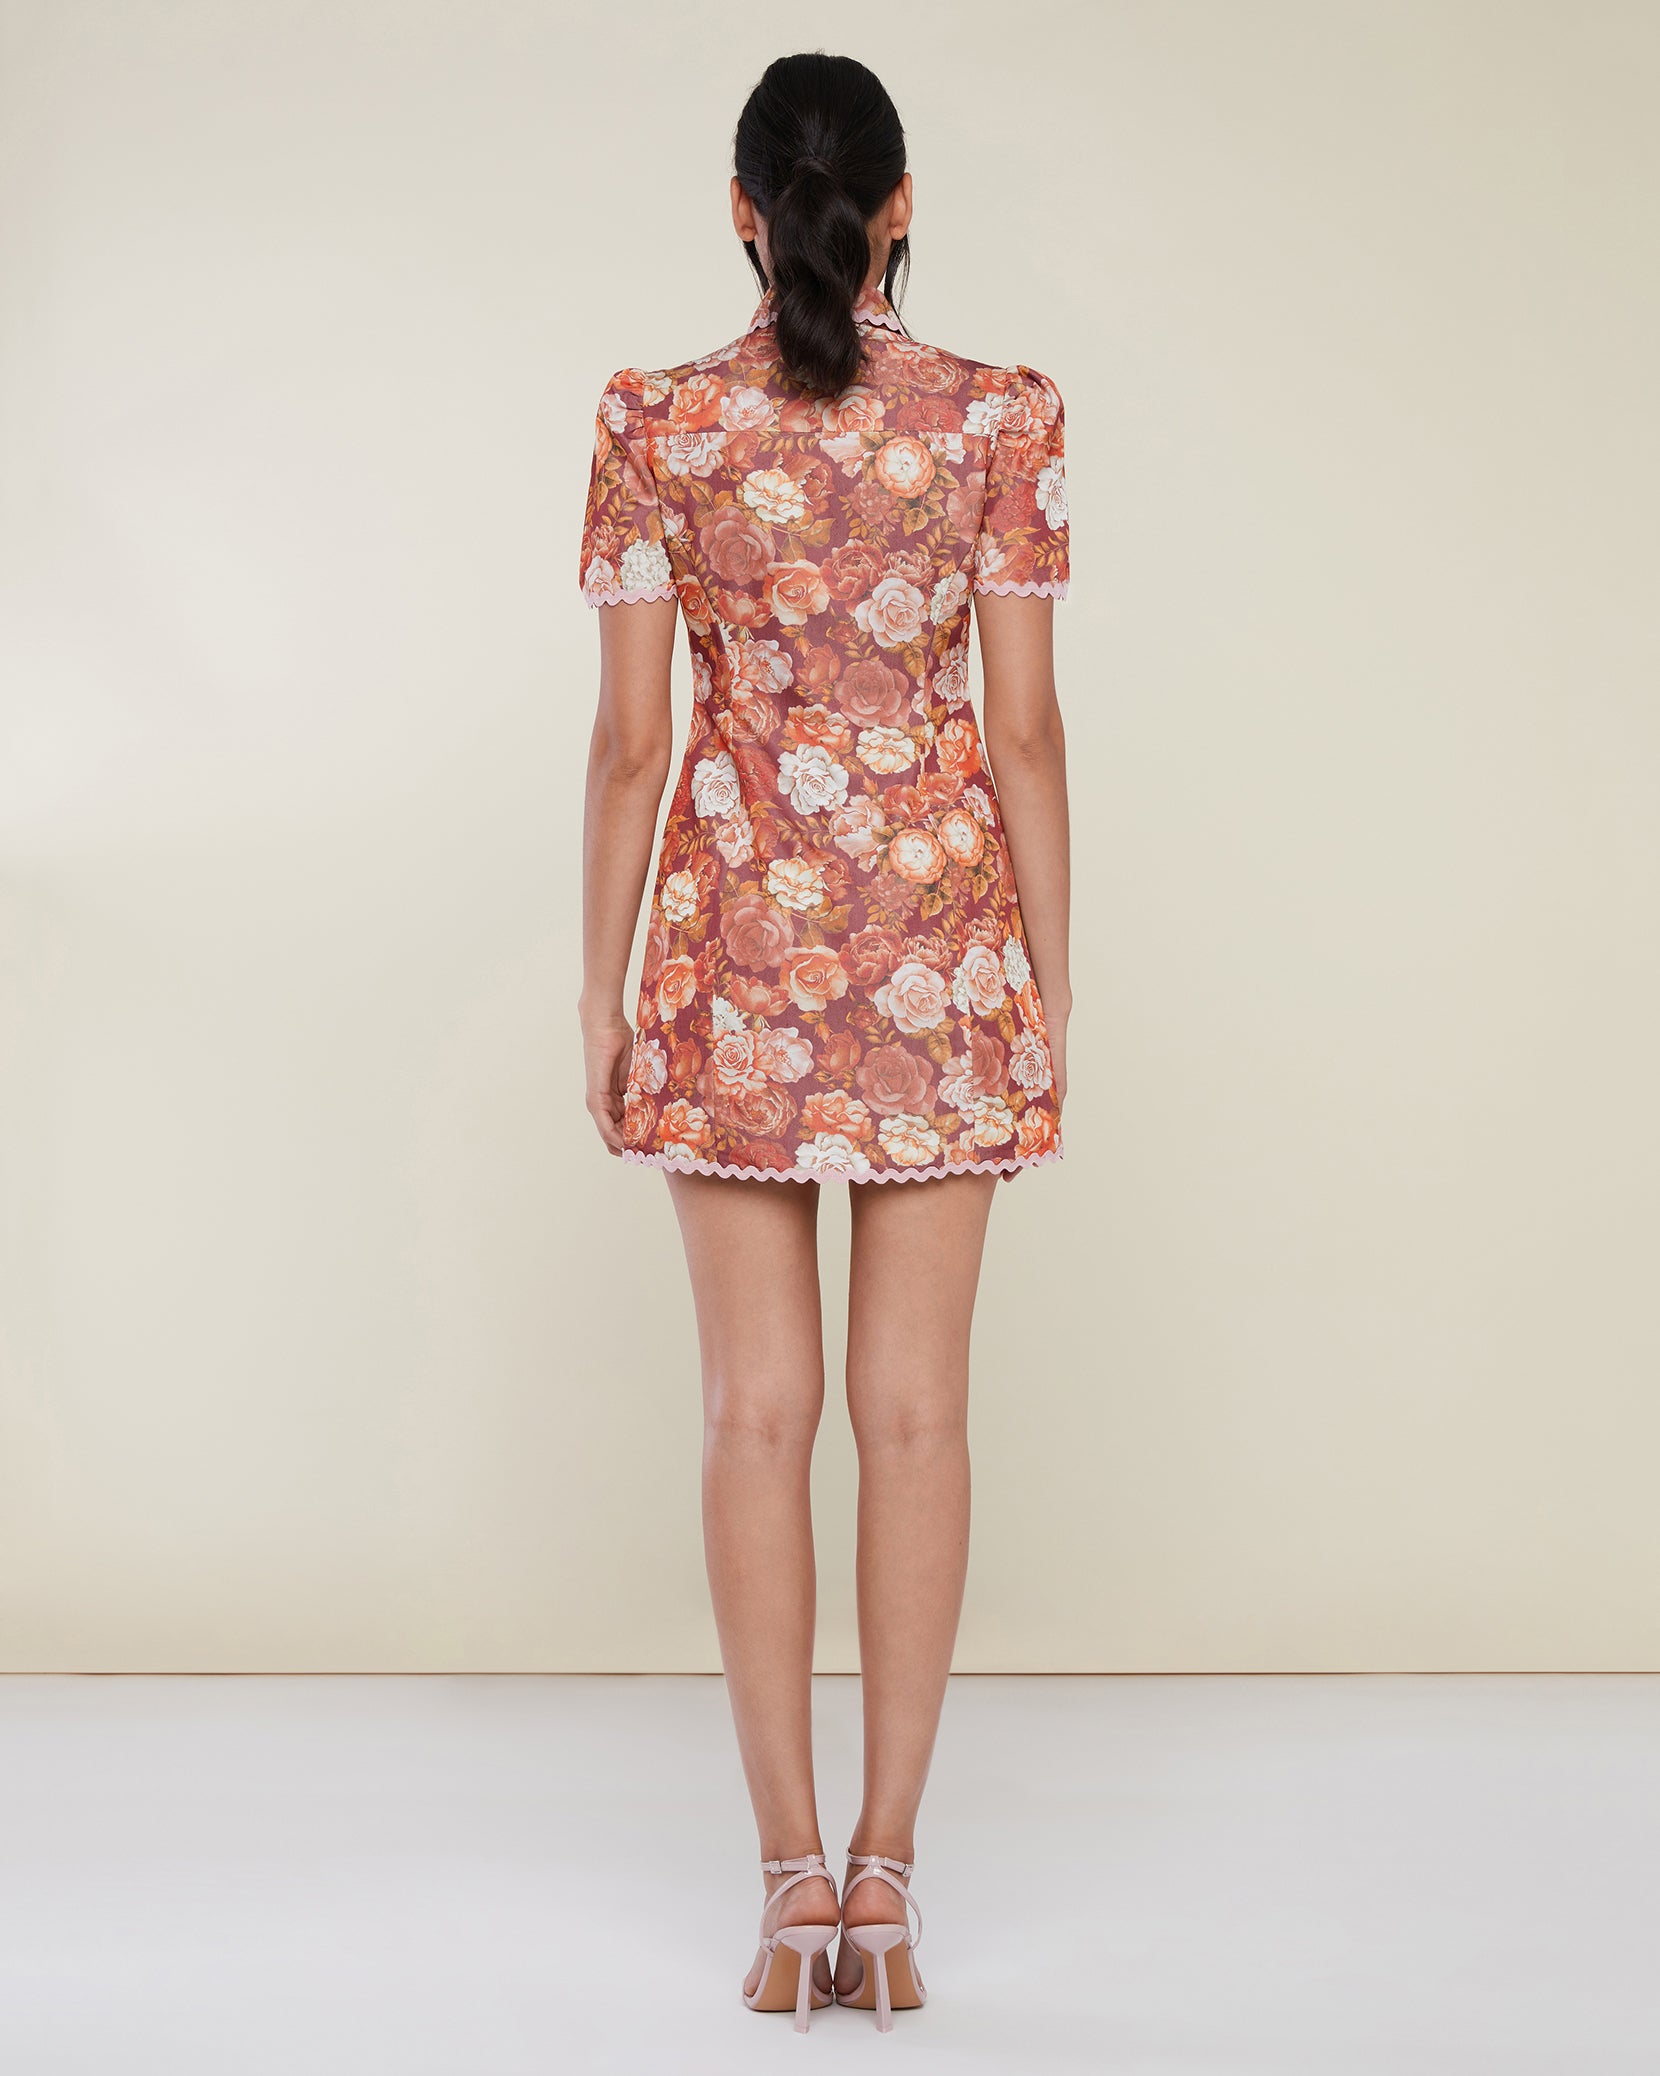 Scallop Shirt Dress – Rachel Parcell, Inc.